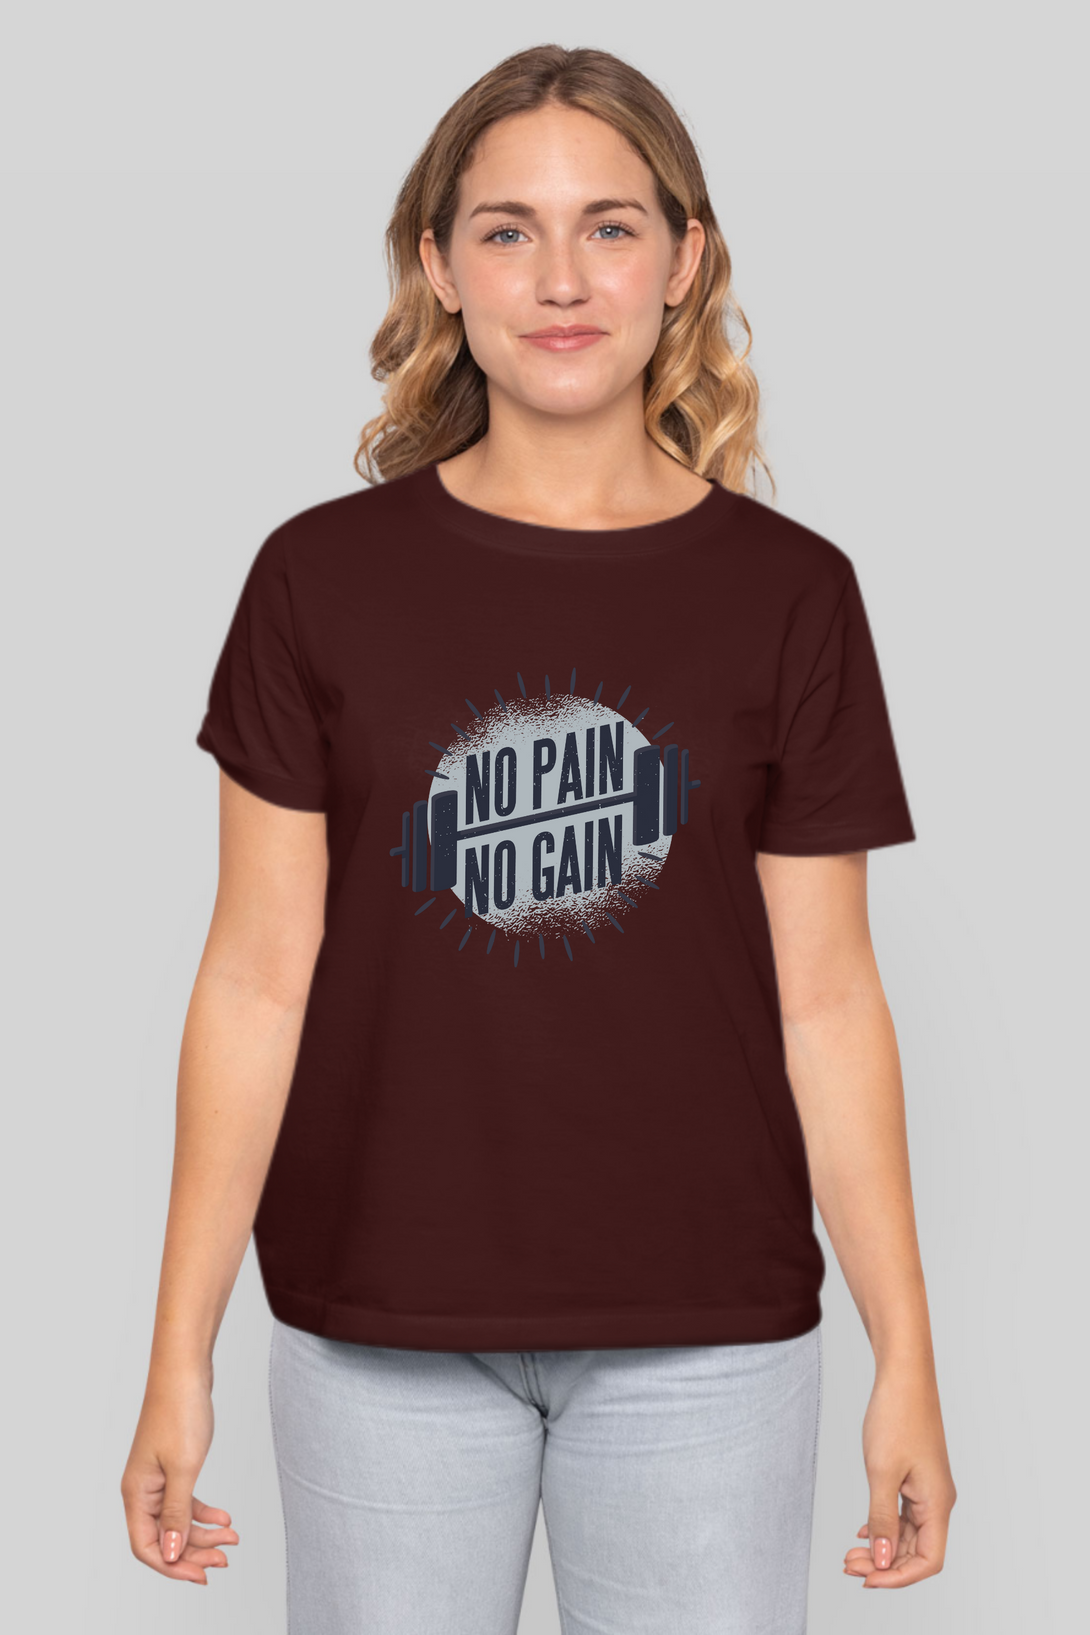 No Pain No Gain Printed T-Shirt For Women - WowWaves - 7